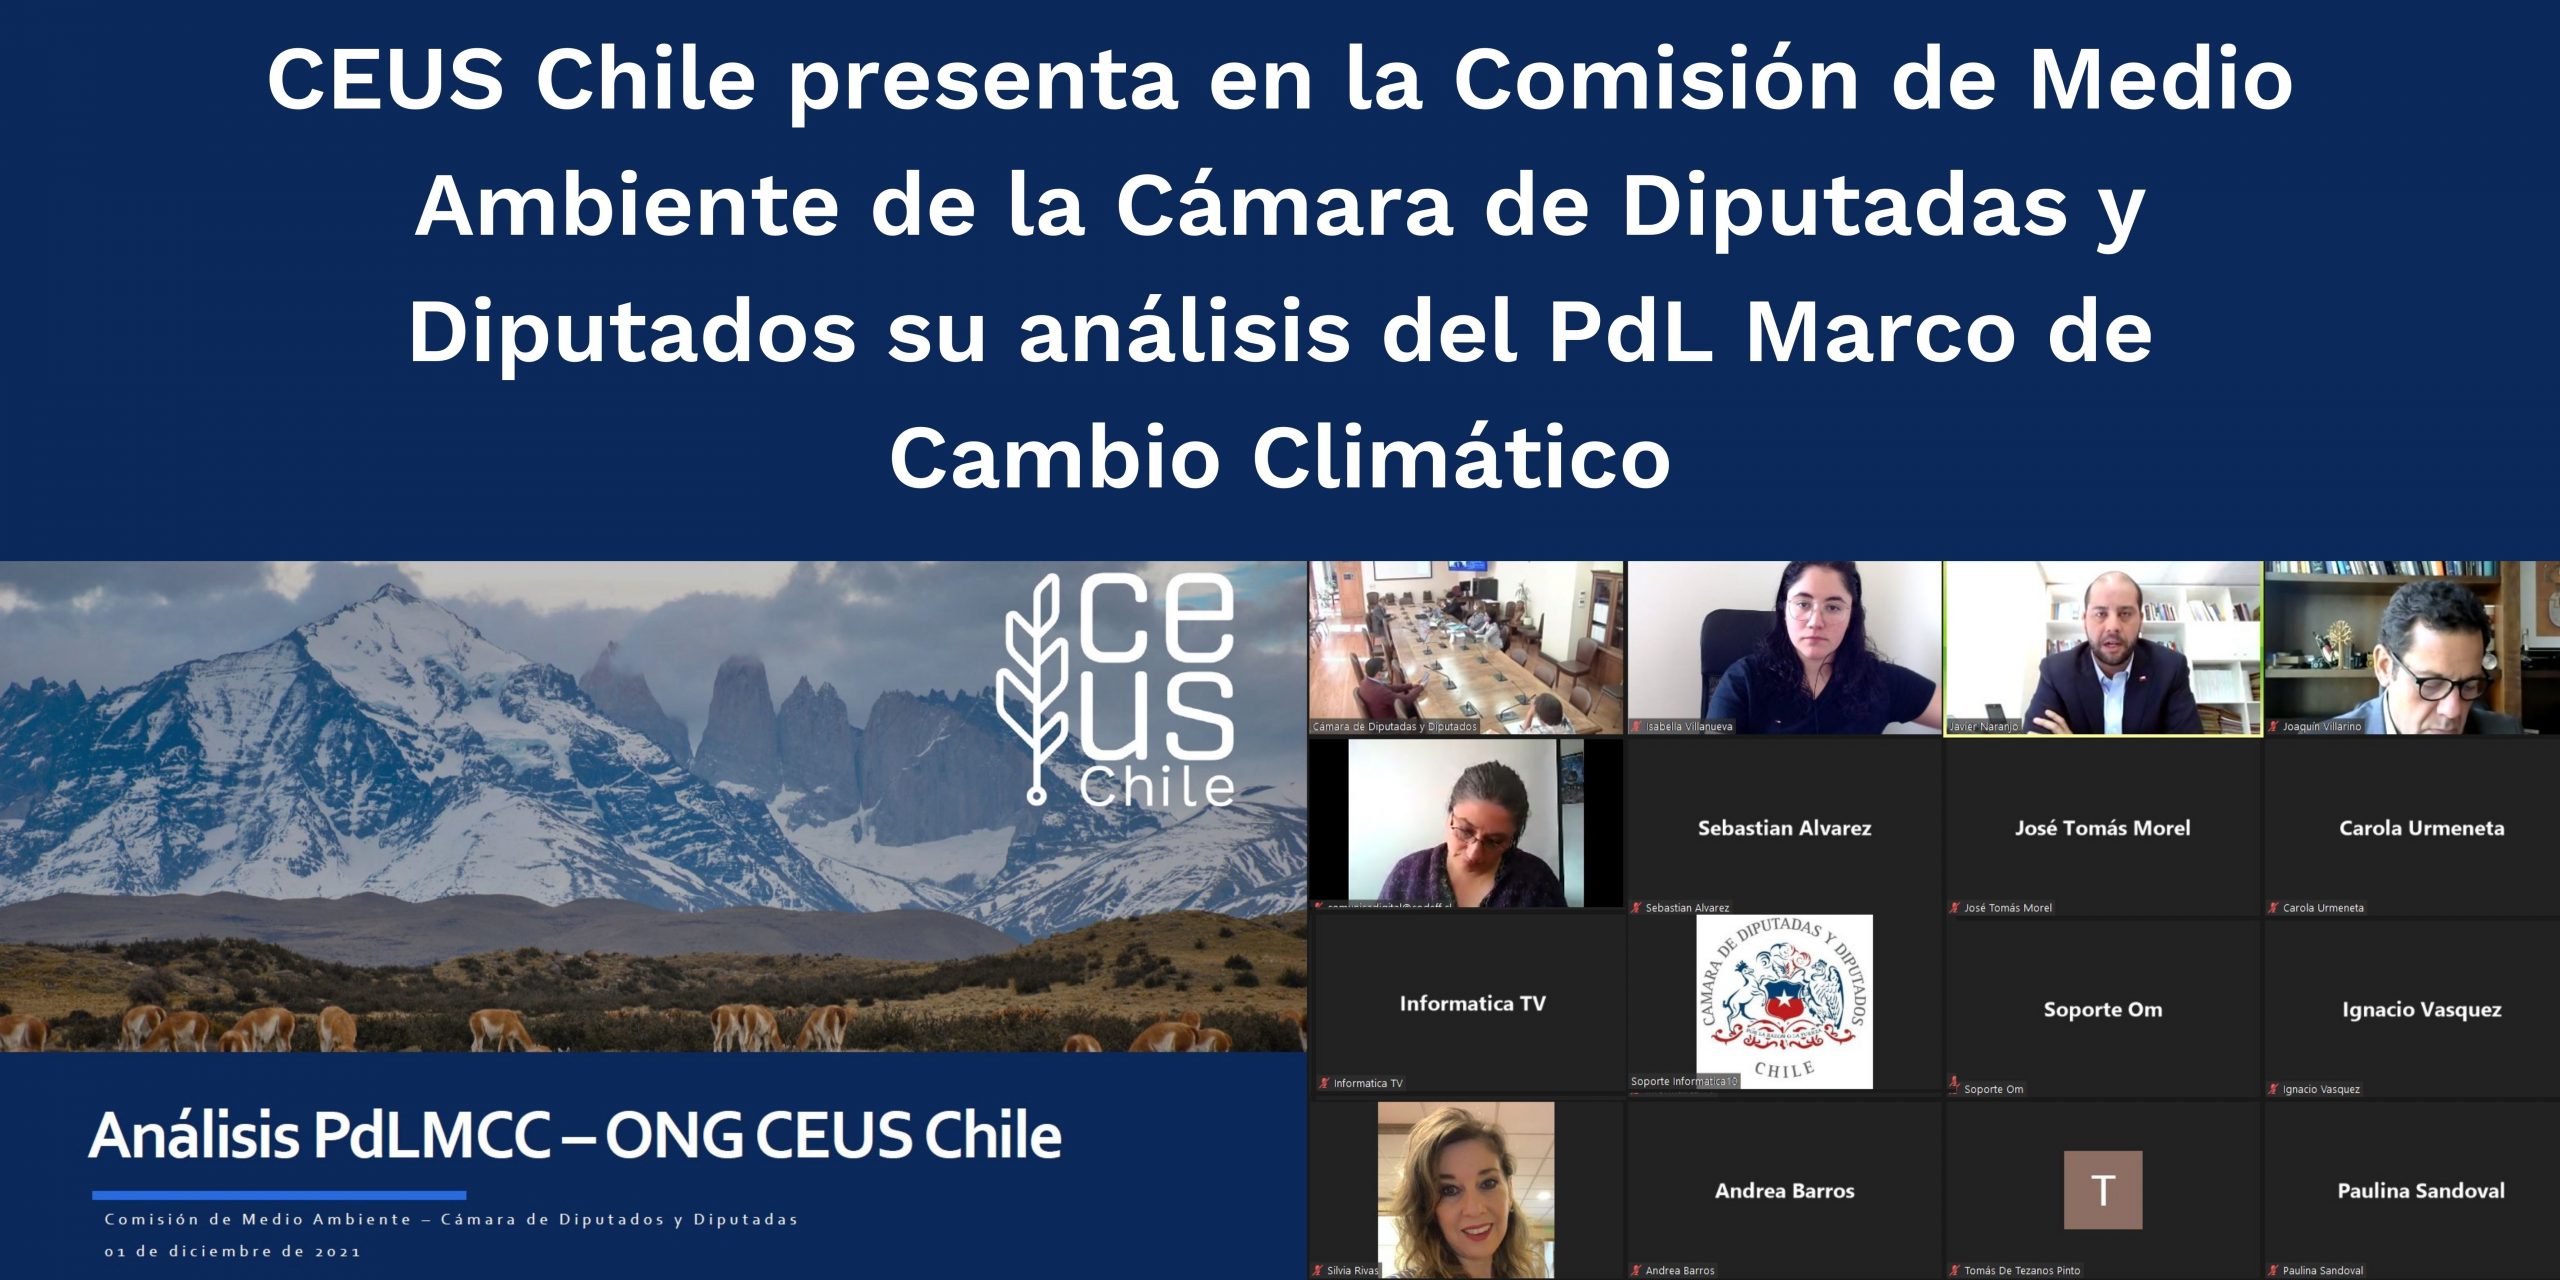 CEUS Chile presenta en Comisión de Medio Ambiente de la Cámara de Diputadas y Diputados